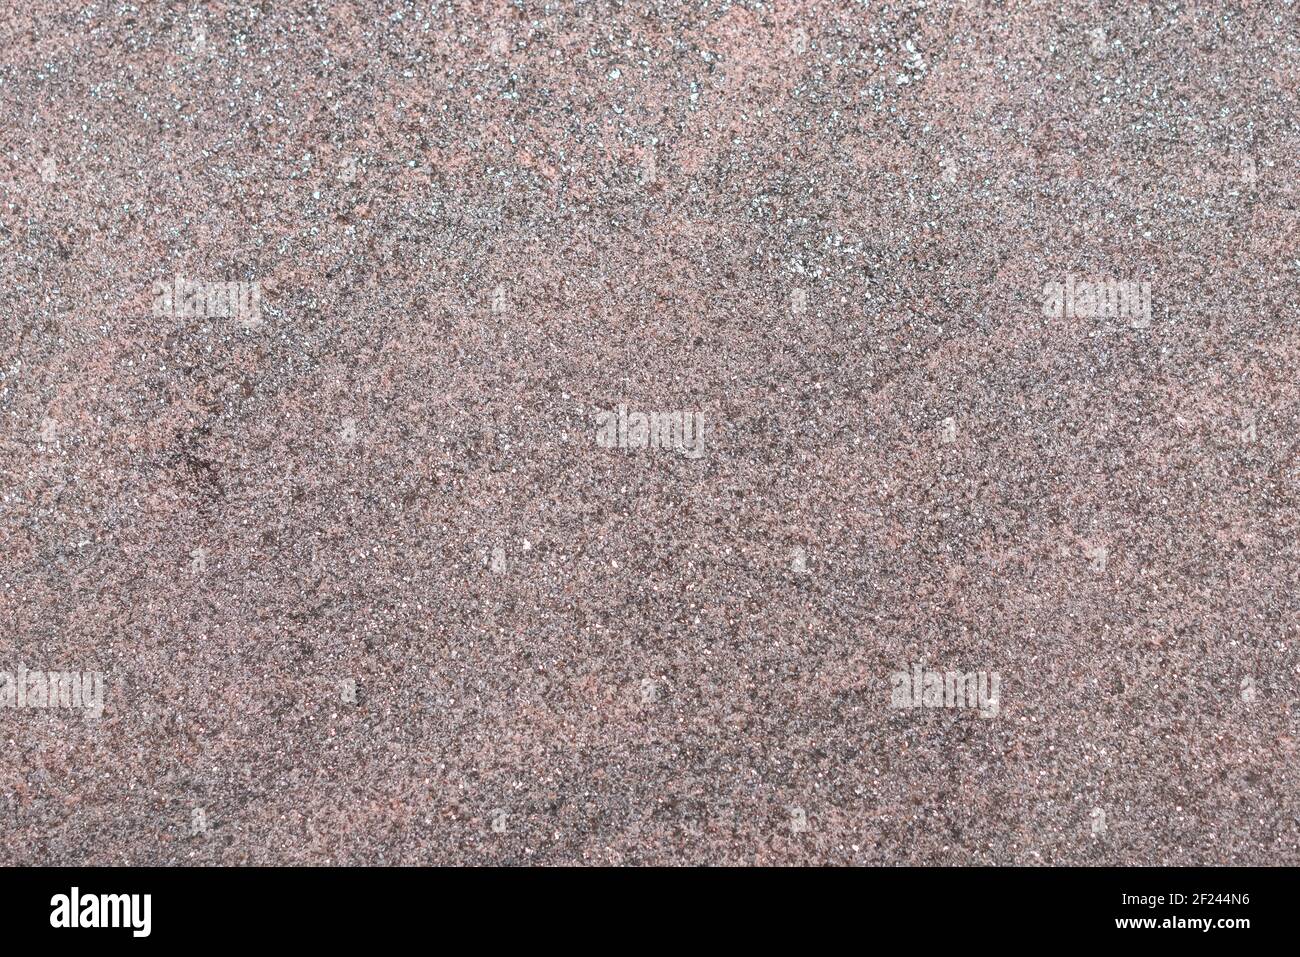 Bunte Naturstein Textur, glatte Granit Oberfläche, können als Hintergrund verwendet werden Stockfoto